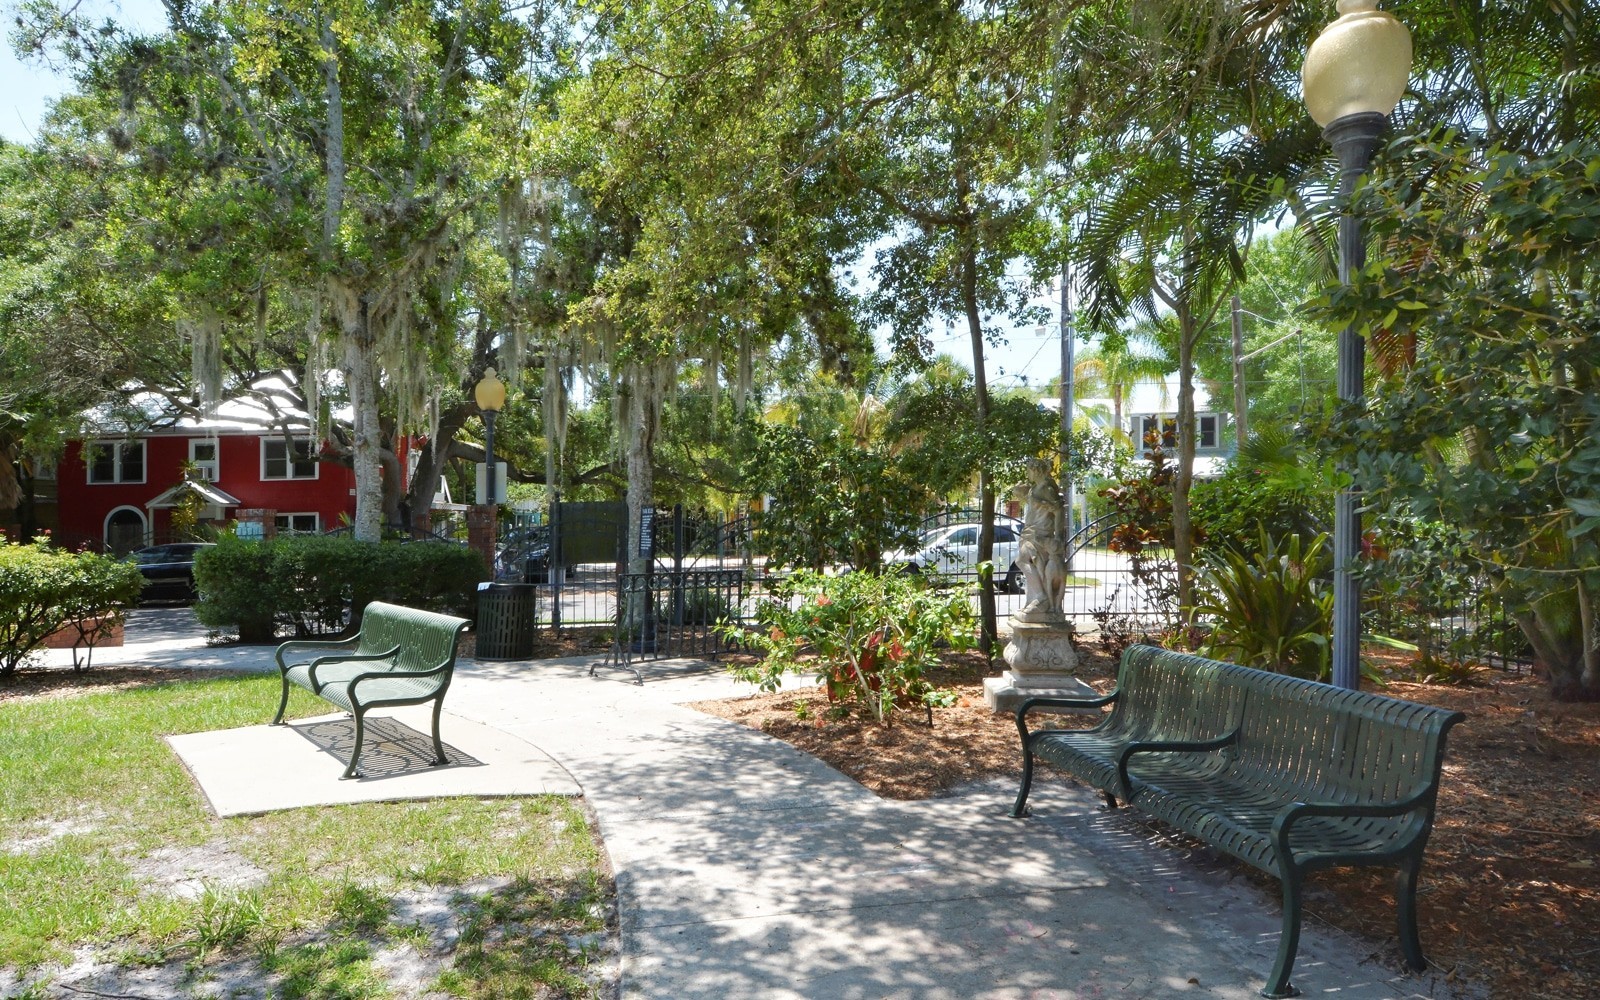 Laurel Park In Sarasota A Diversity Of Historic Homes For Sale